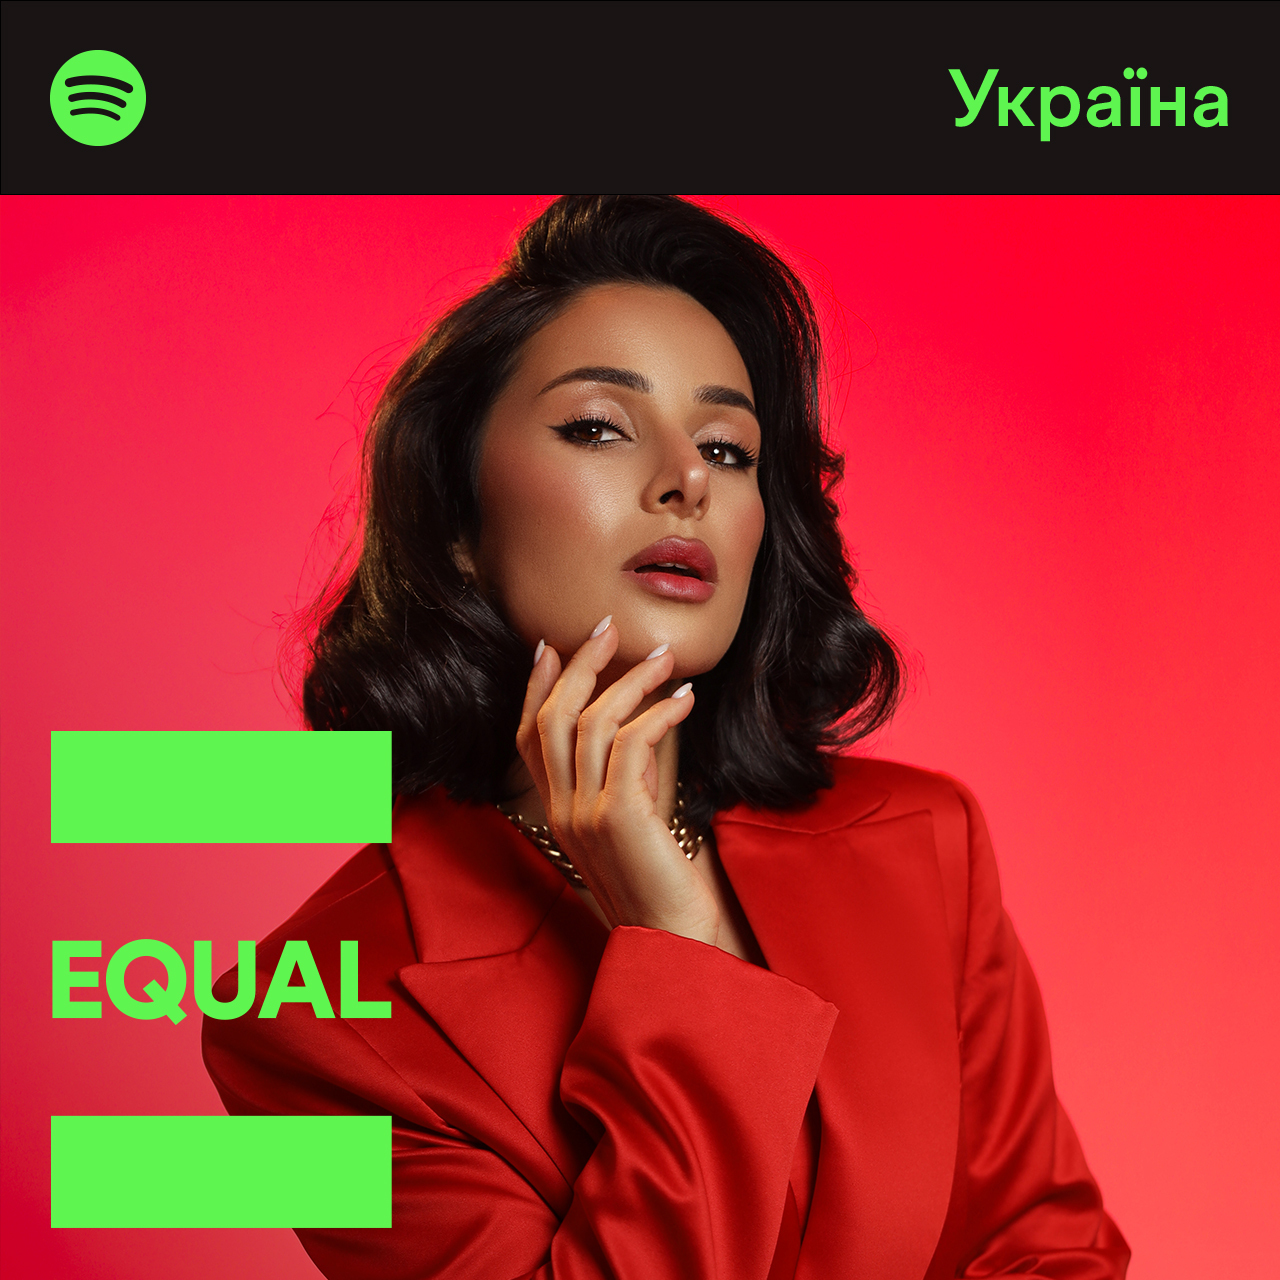 Вместе с Spotify Злата Огневич выступает за равные возможности для женщин в мире музыки. 